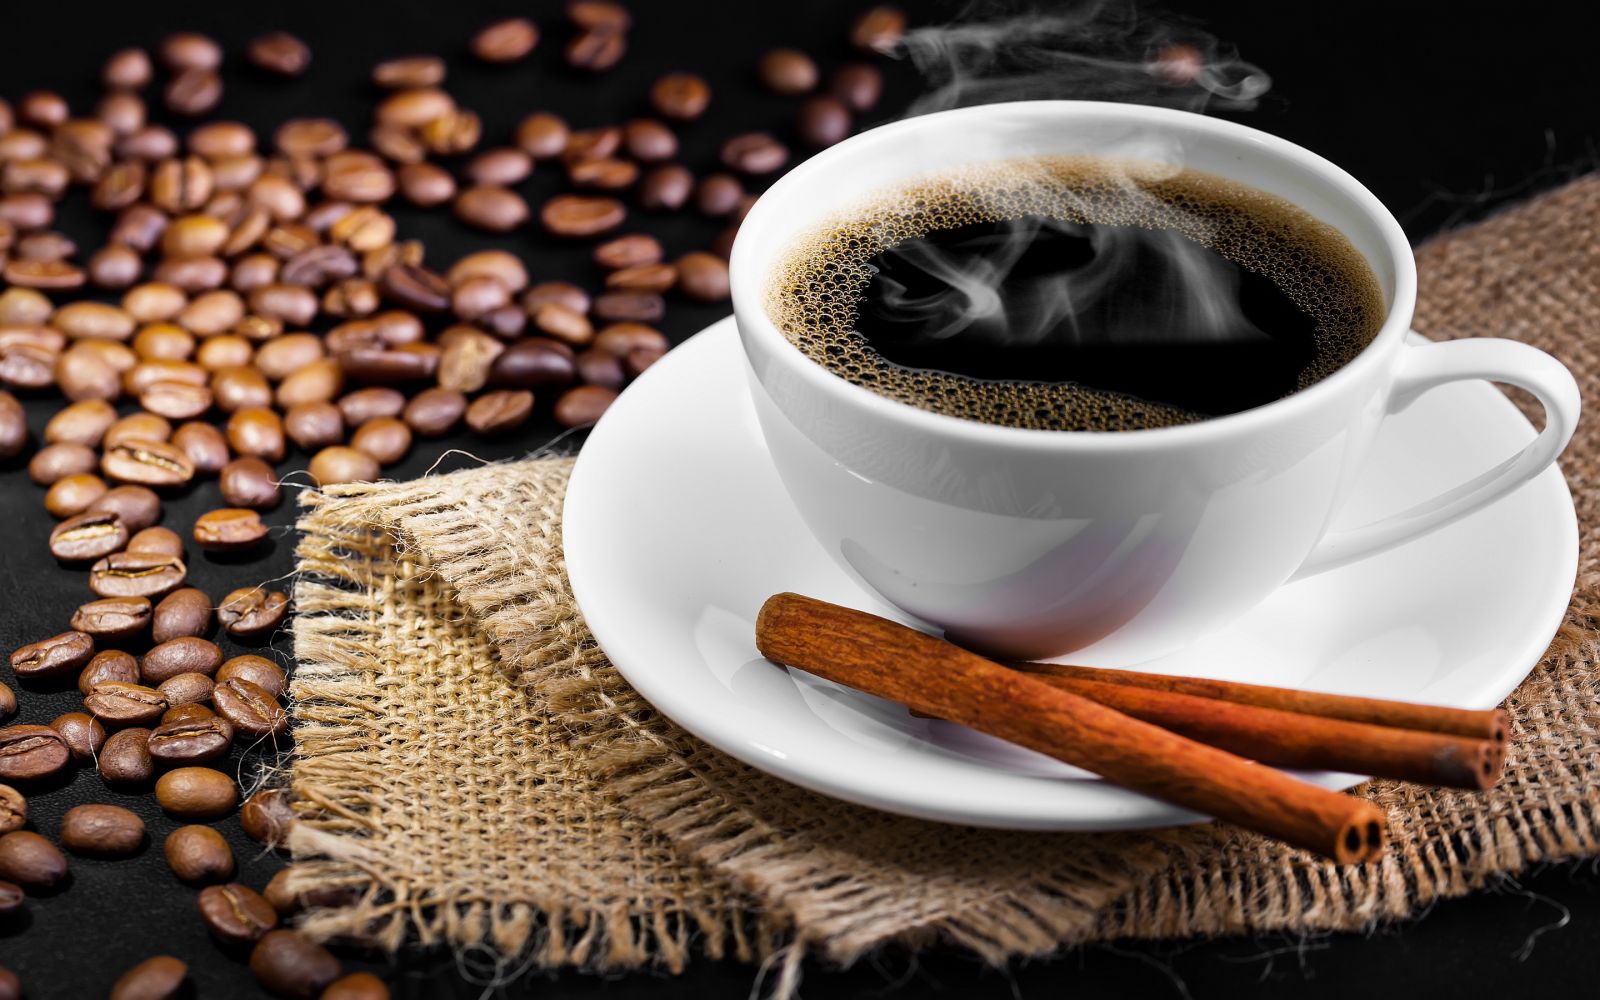  Cà phê được gọi dưới nhiều tên gọi của nhiều quốc gia.